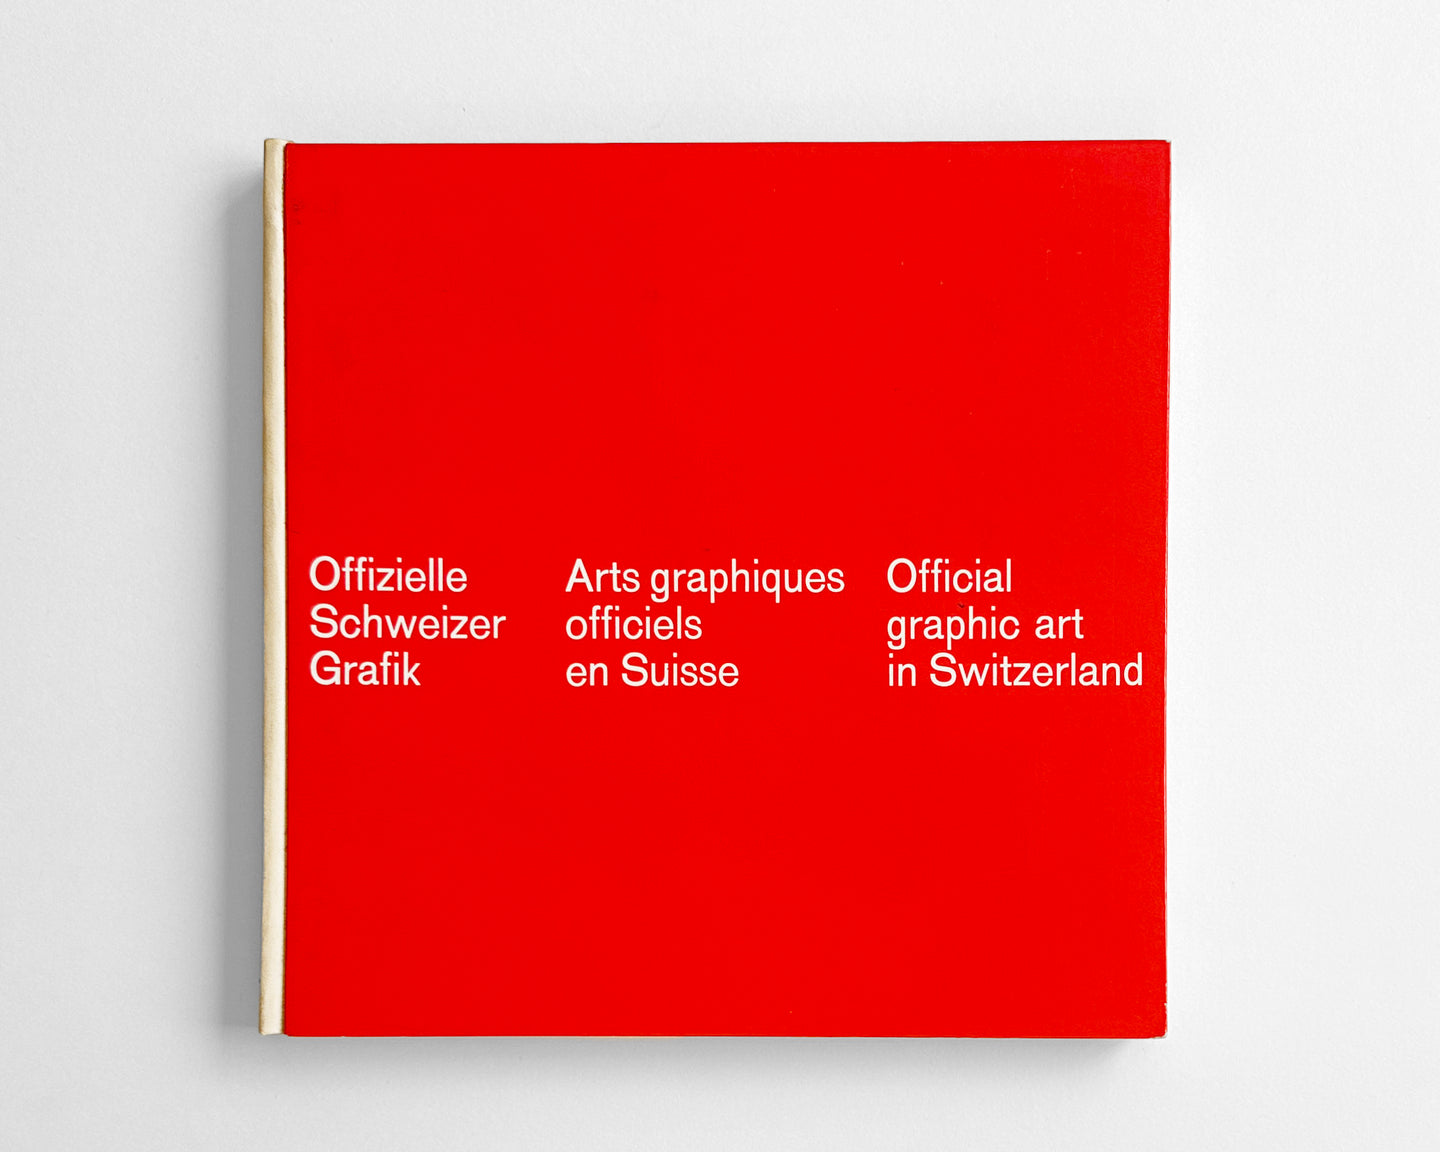 Official Graphic Art in Switzerland, 1964 [Walter Bangerter and Armin Tschanen]